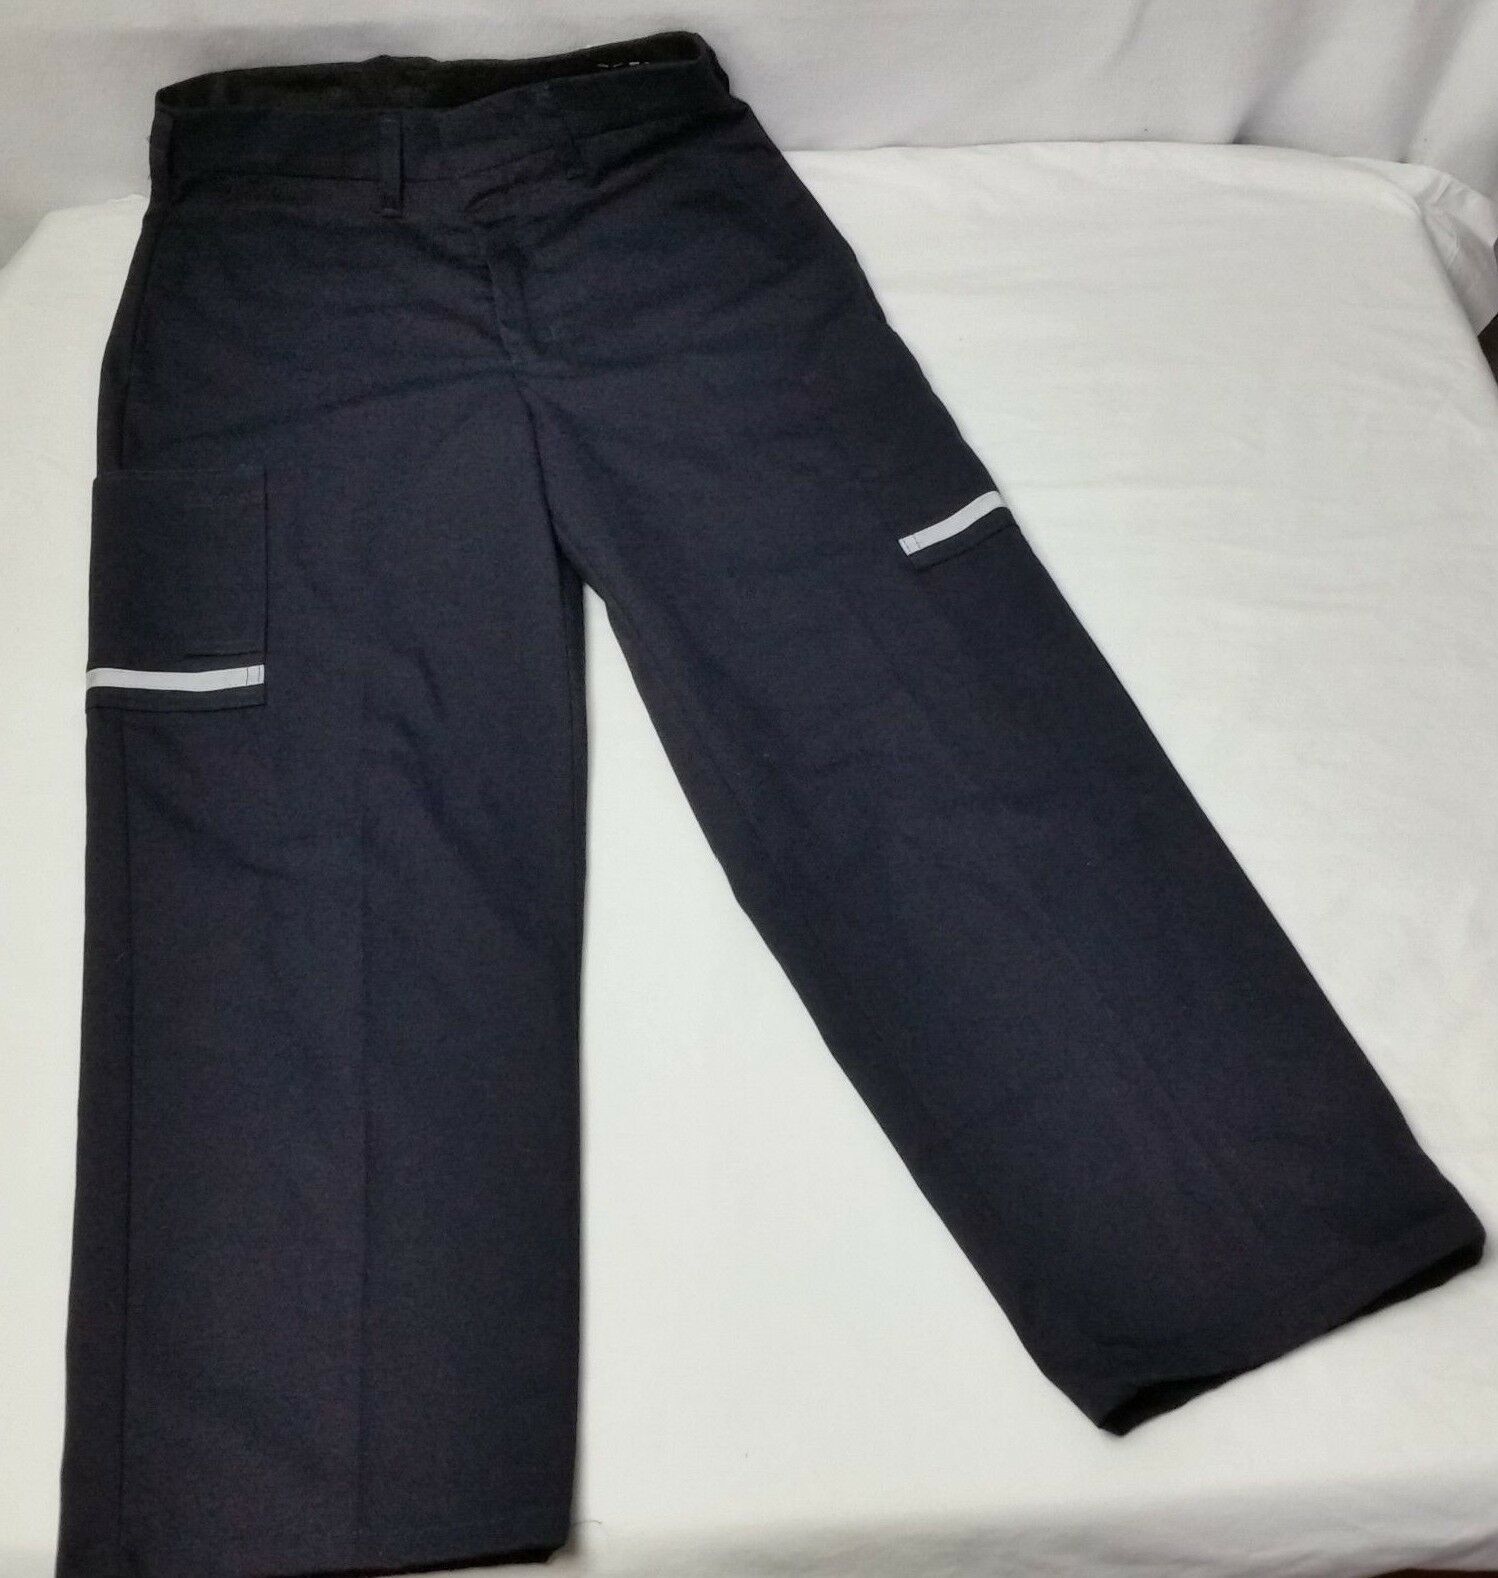 FedEx Stan Herman VF Uniform Pants Men FD28012 Size 28Rx26 Reflective ...